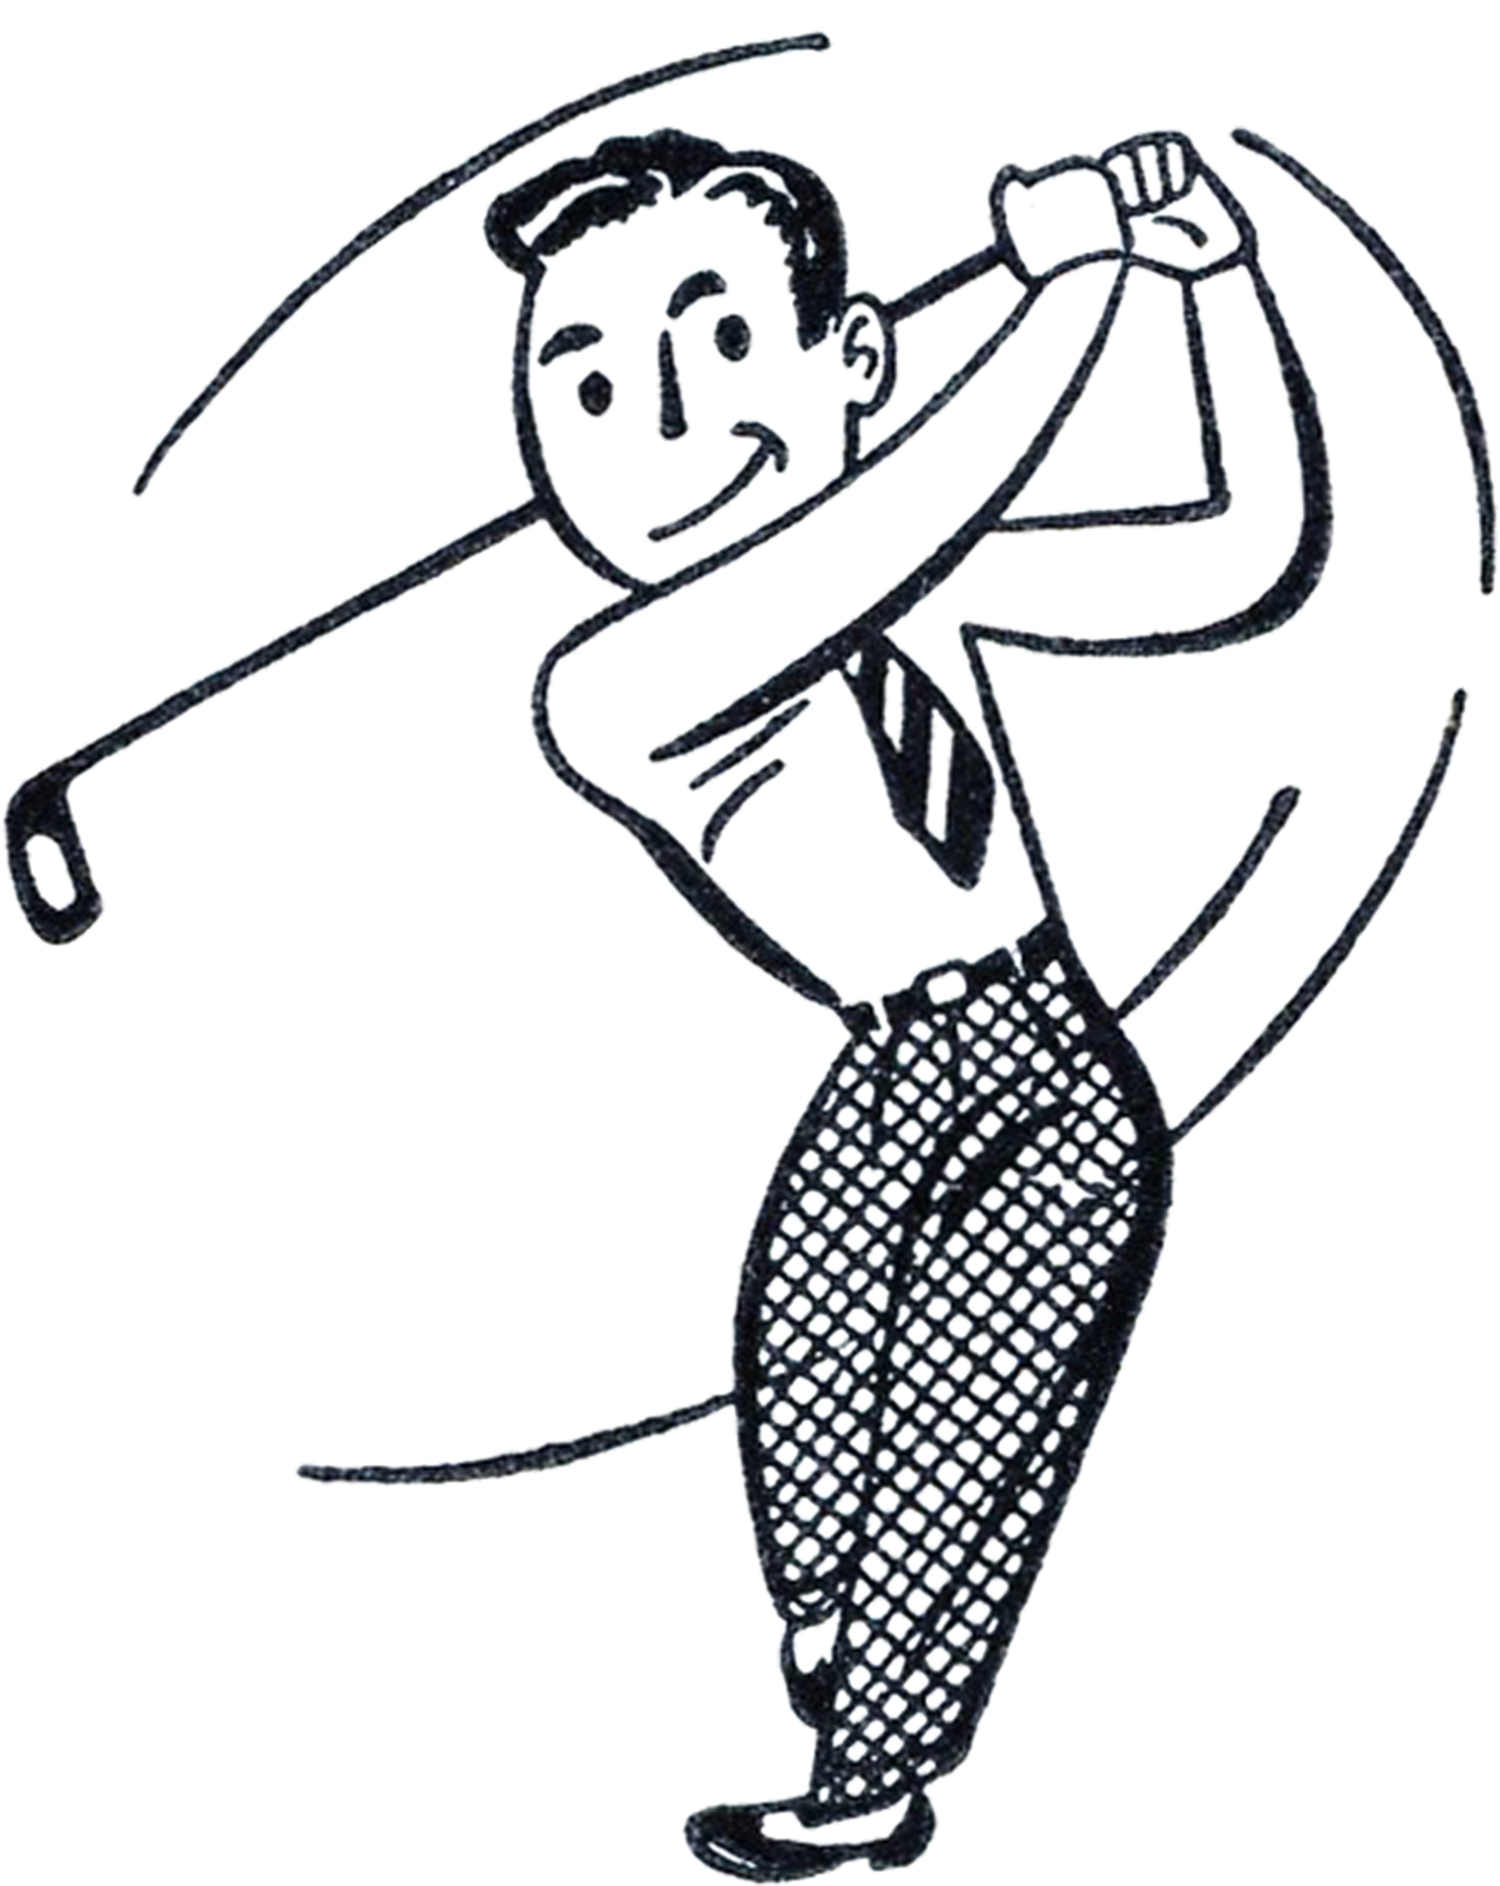 Retro Golf Clip Art - Funny! - The Graphics Fairy